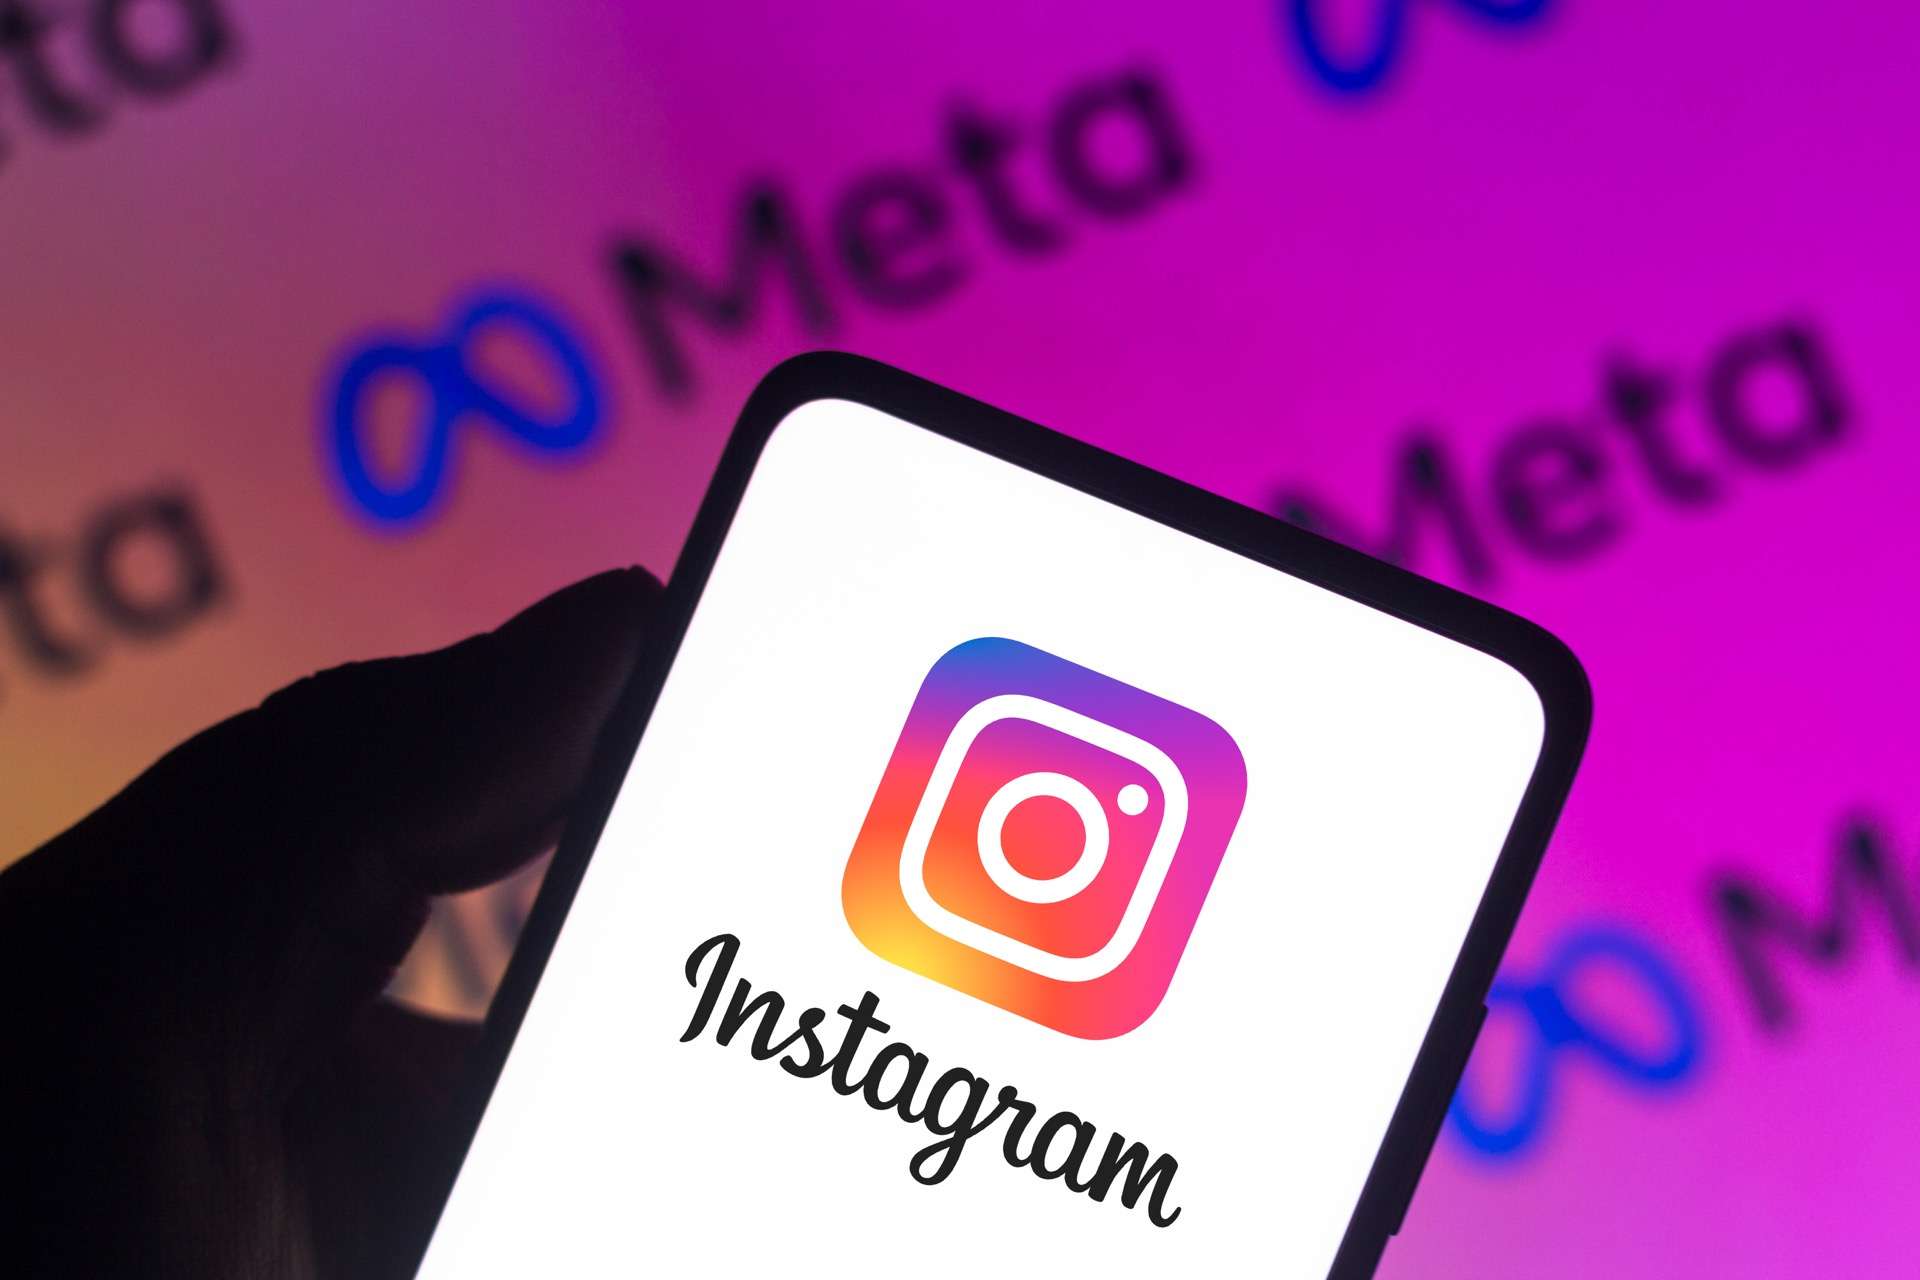 Meta integra el editor de fotos y el generador de fotos con tecnología de inteligencia artificial en Facebook e Instagram